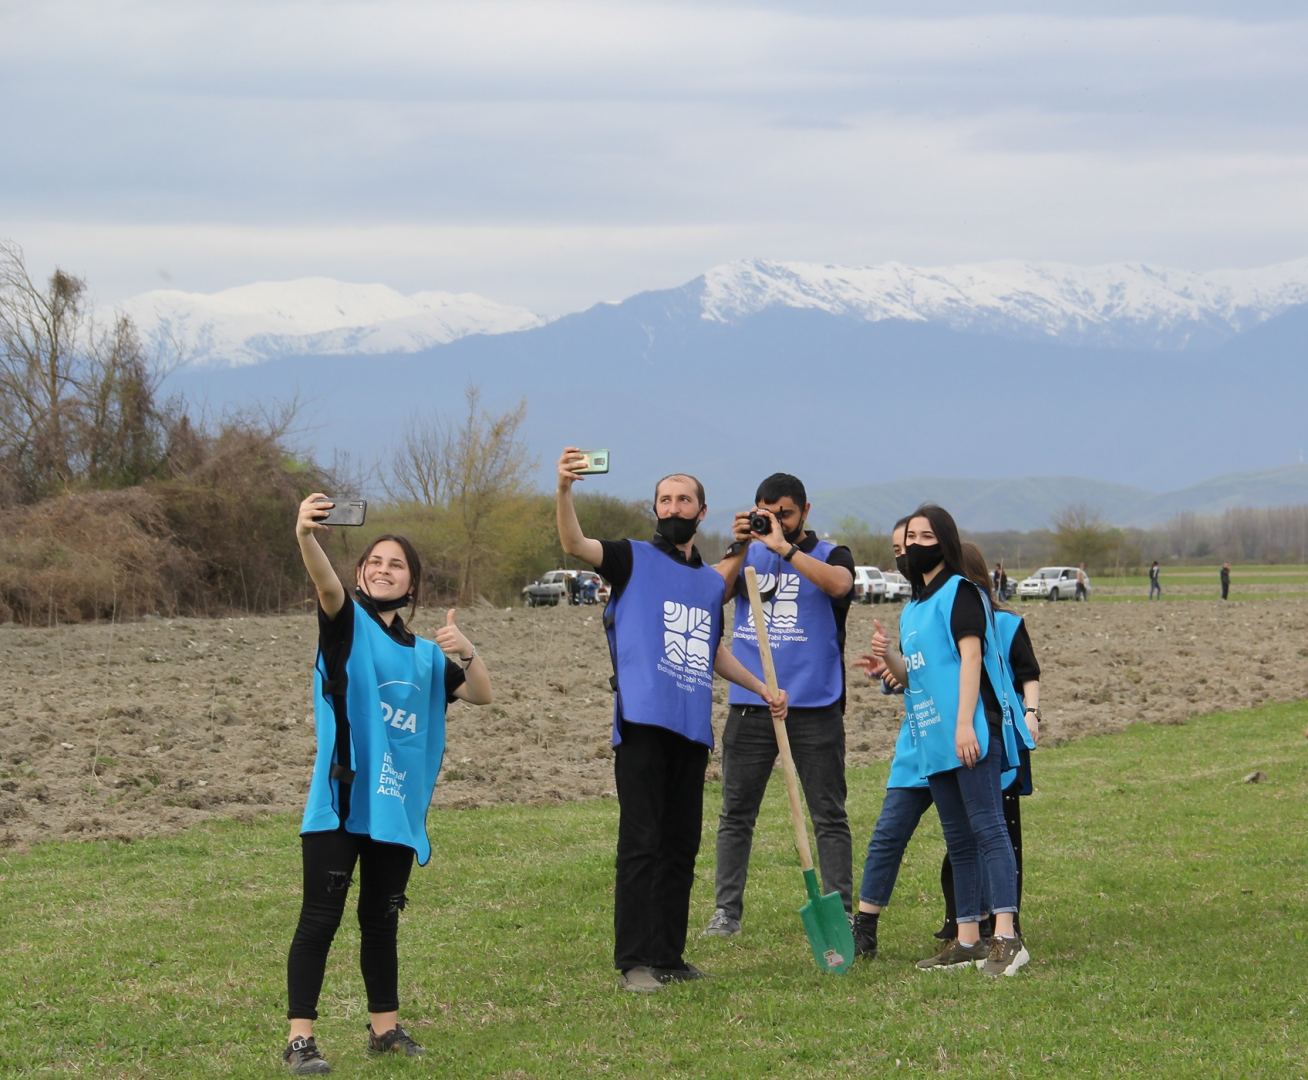 В Азербайджане в рамках "Зеленого марафона" продолжаются акции по посадке деревьев (ФОТО)